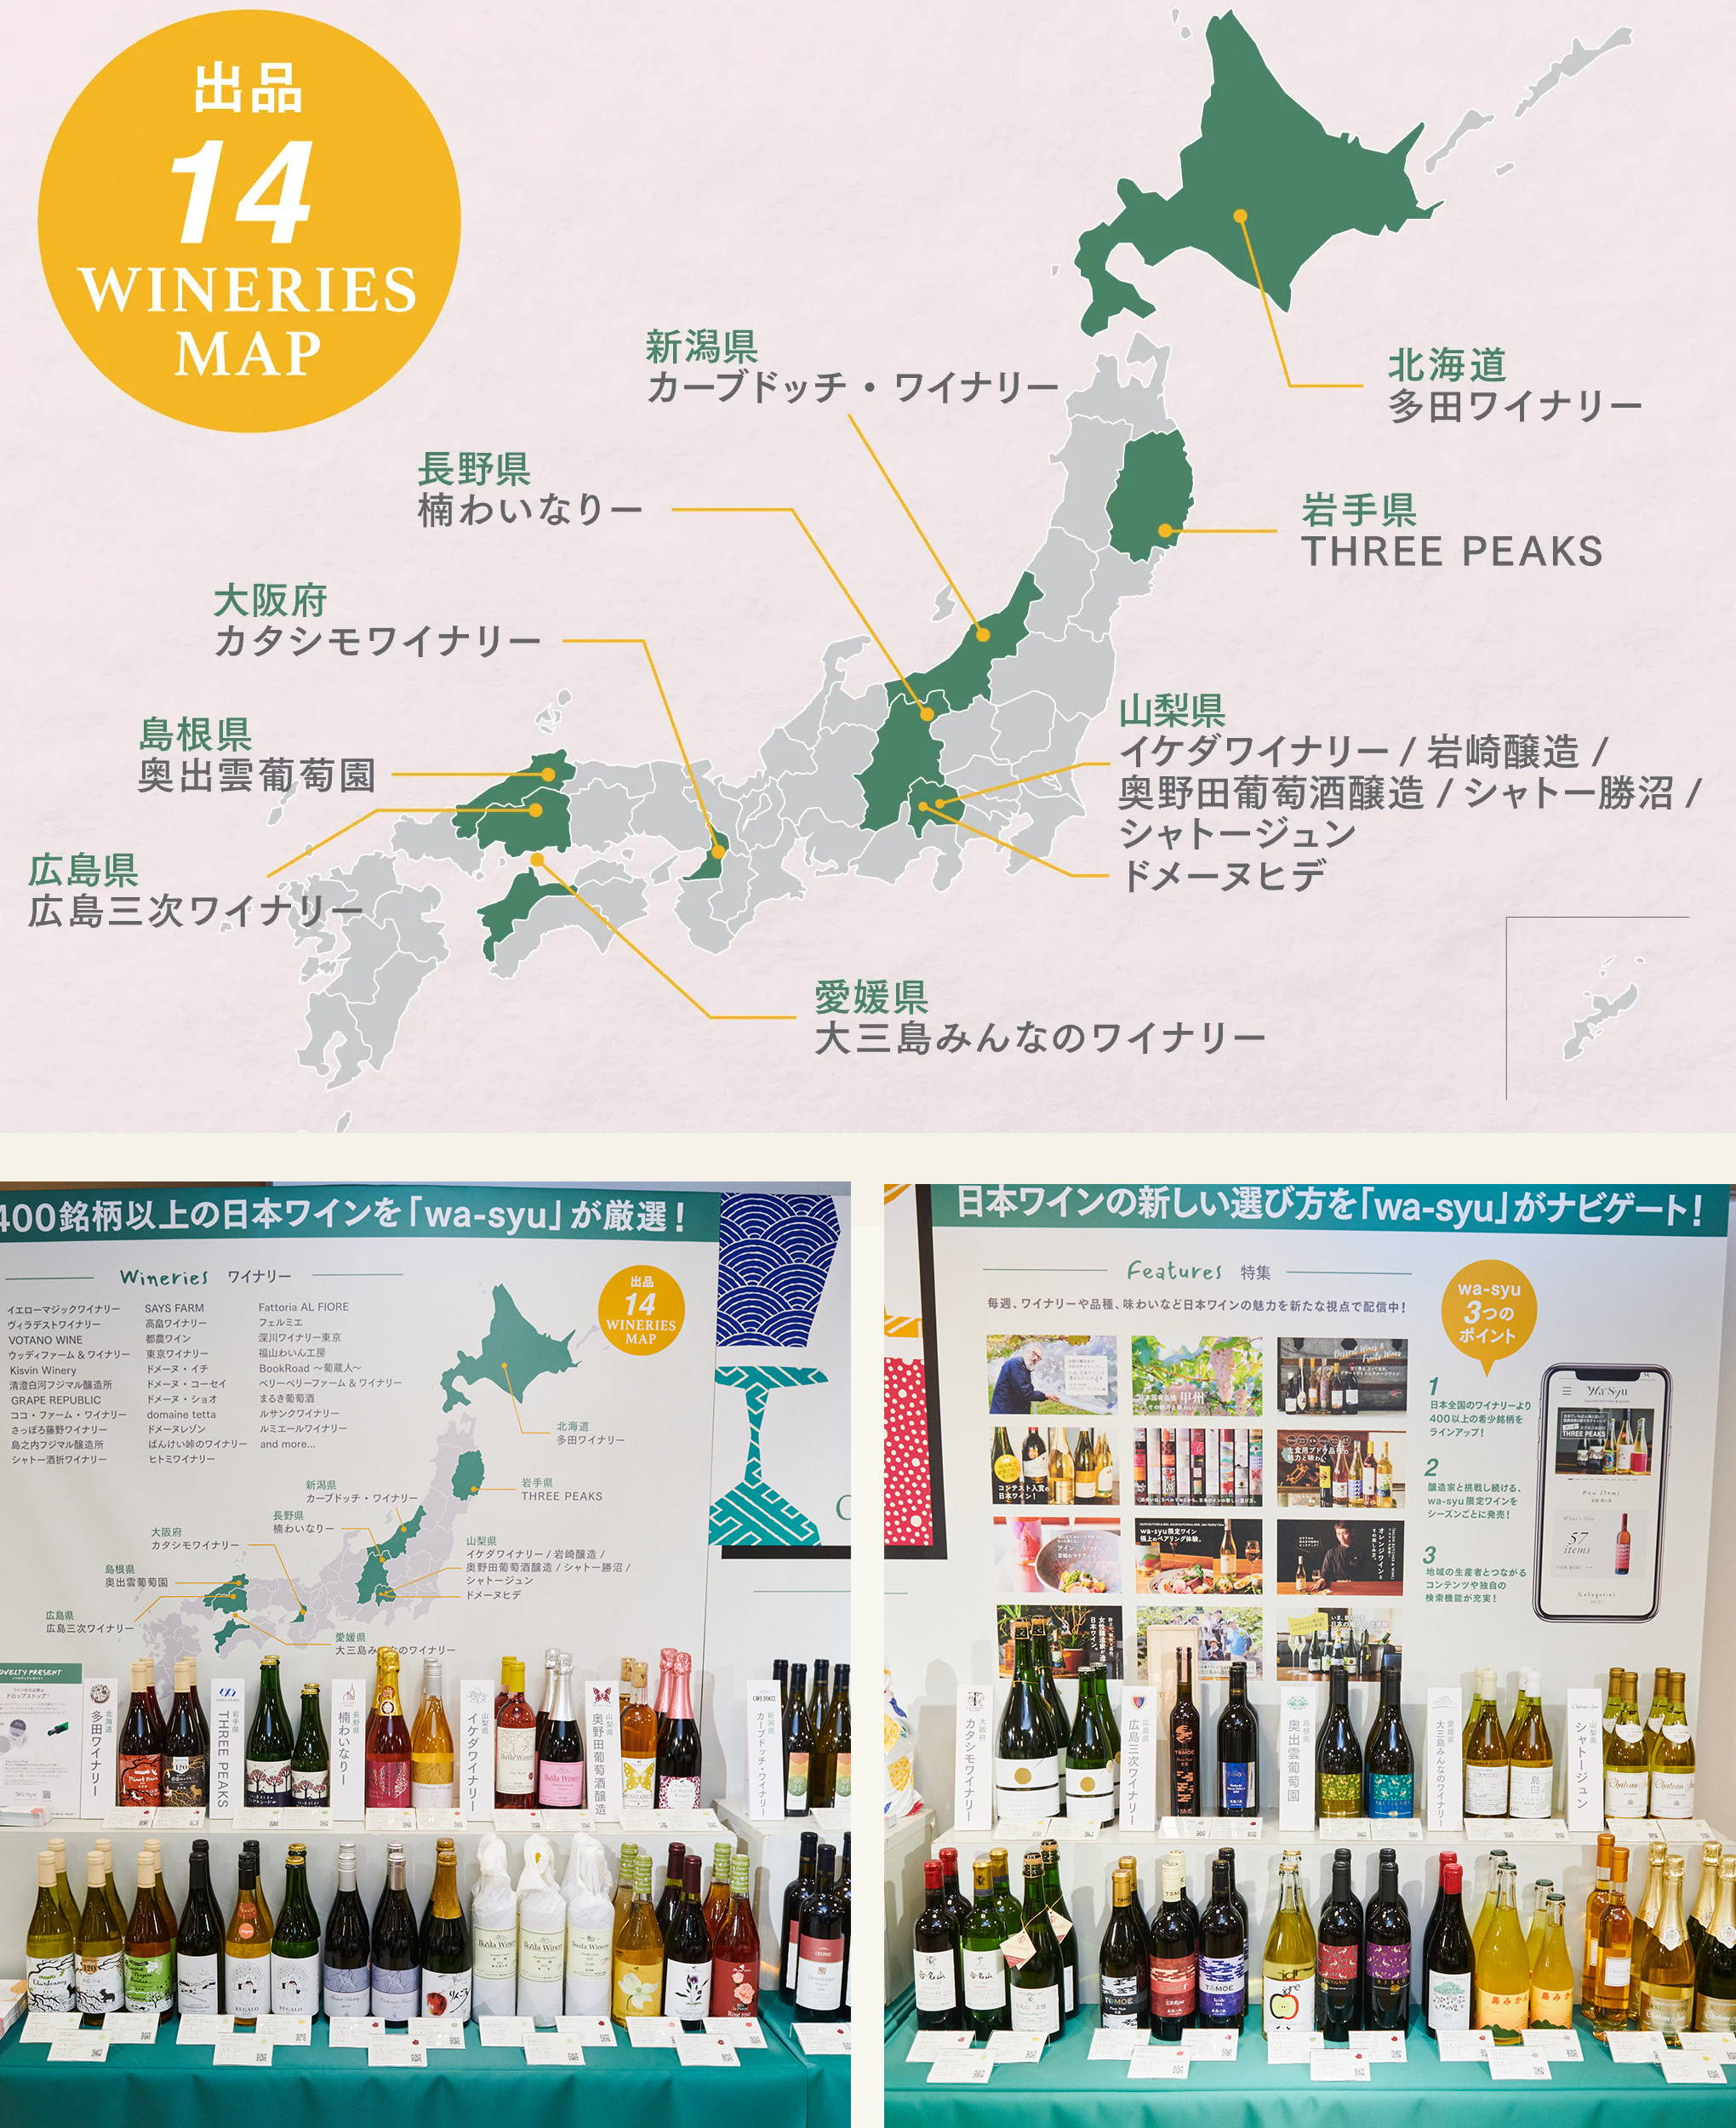 14ワイナリー、80銘柄のワインが大集合。『wa-syu』のブースは展示もがんばりました。